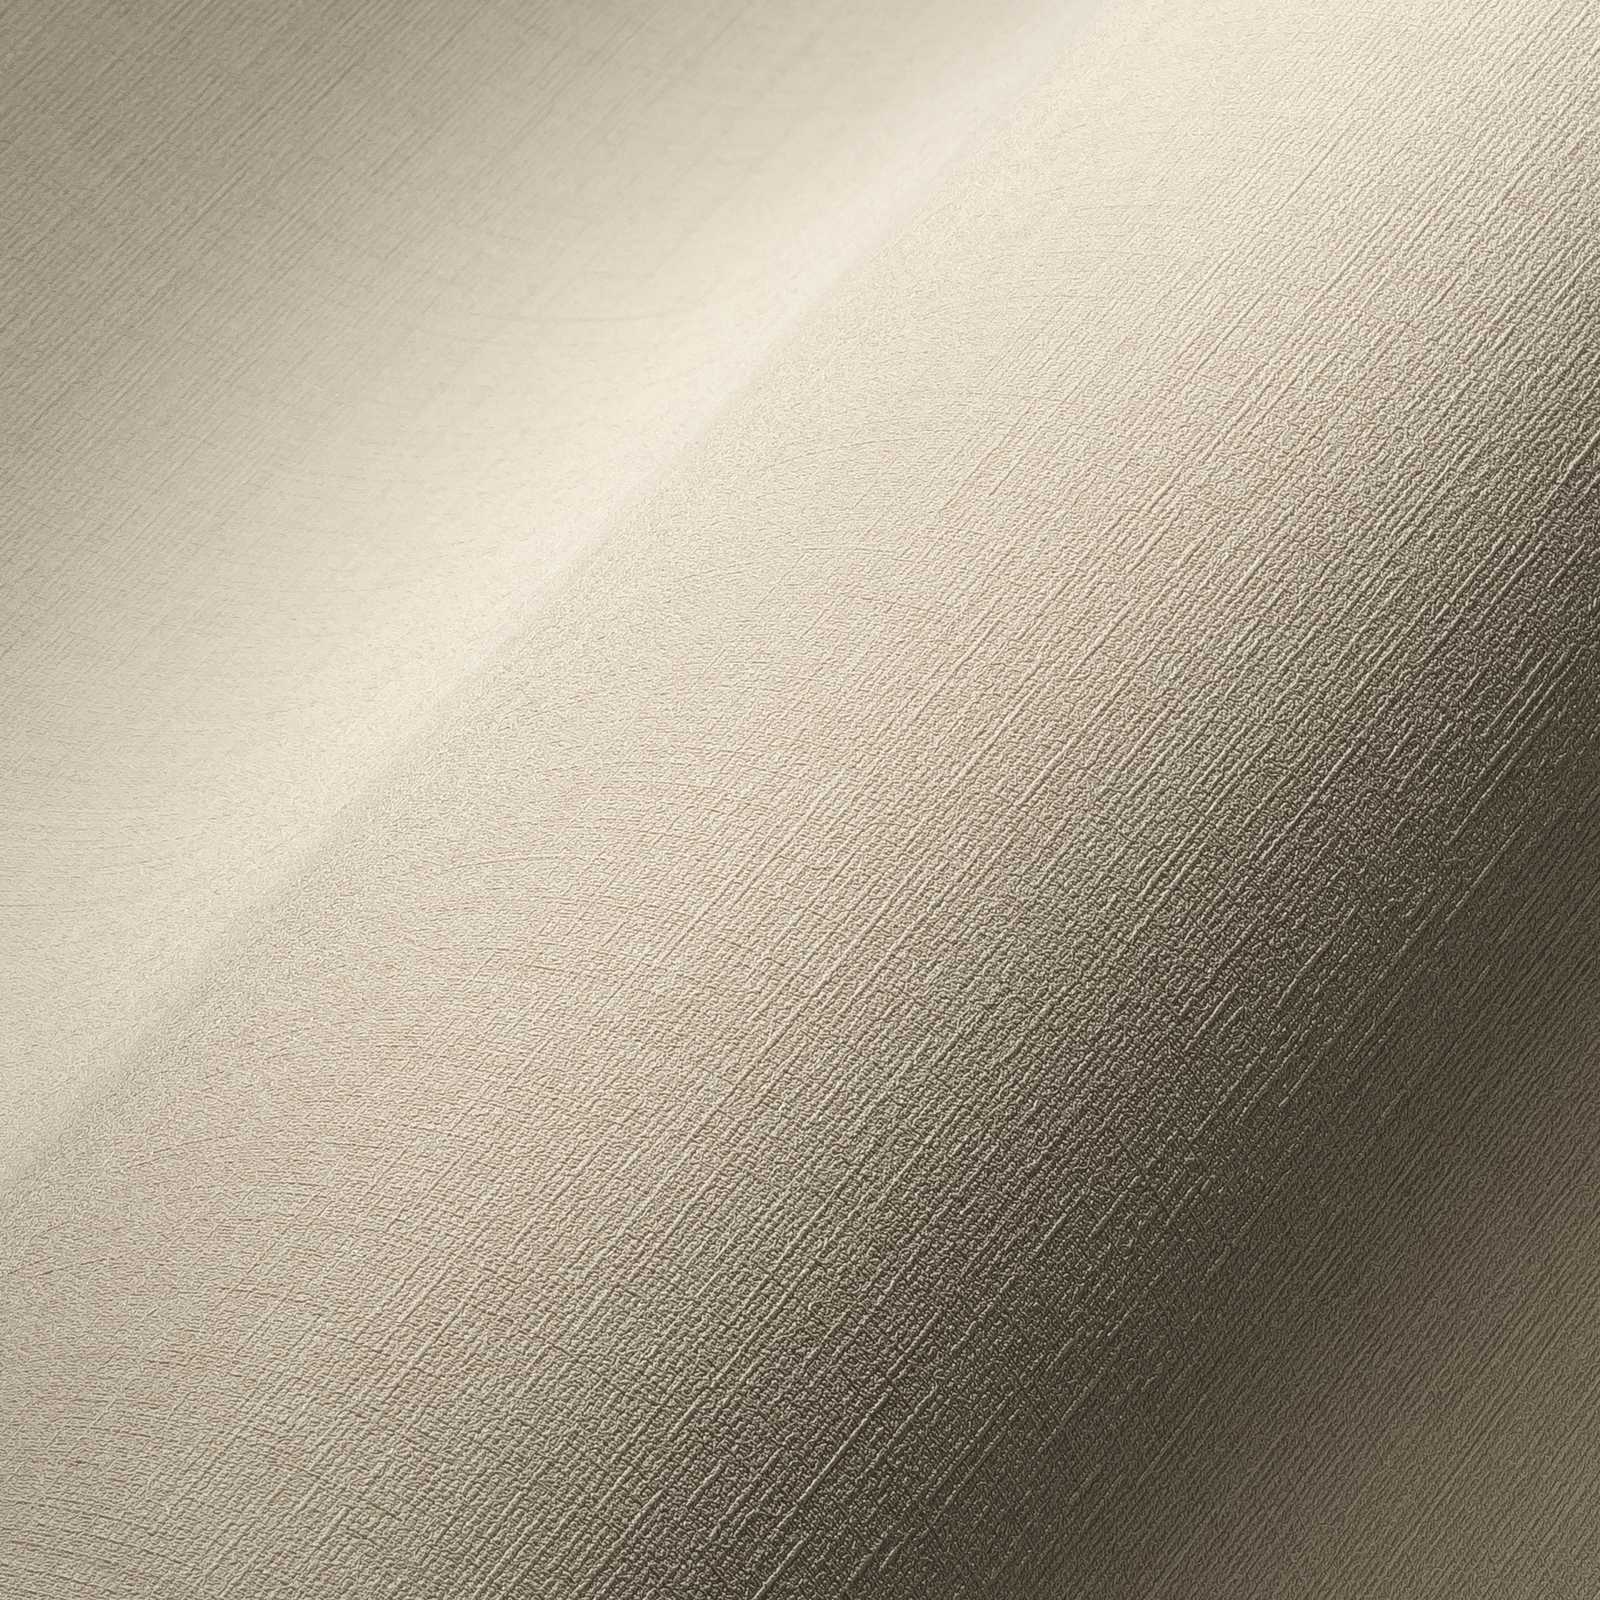             Papel pintado no tejido marfil con efecto de textura - crema
        